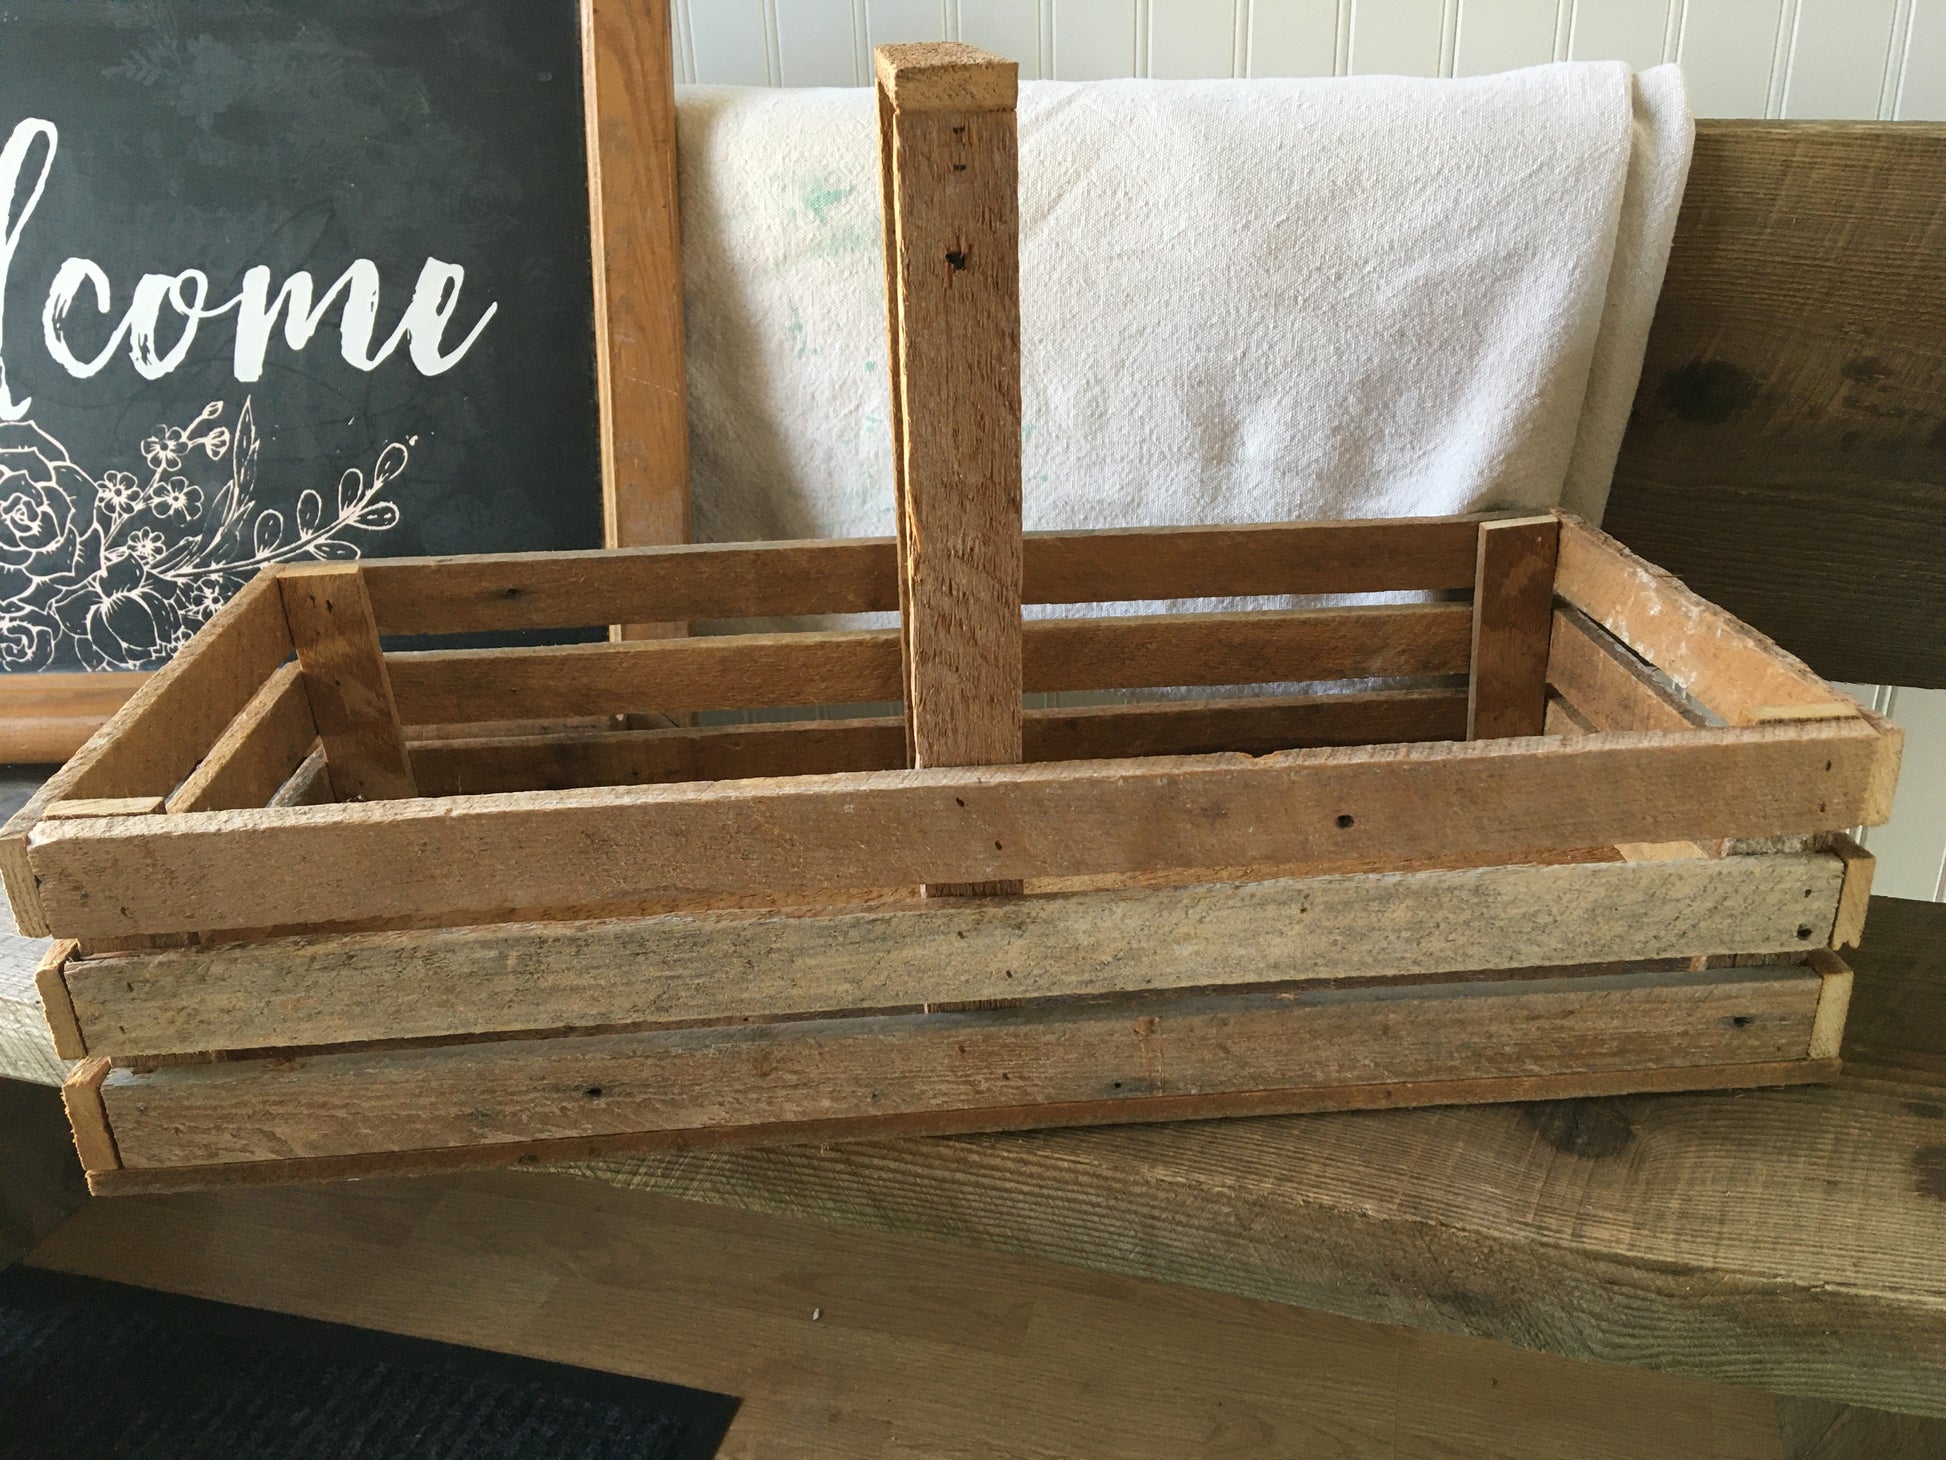 Garden Basket Handmade custom wooden basket with handle – Steel Roots Market